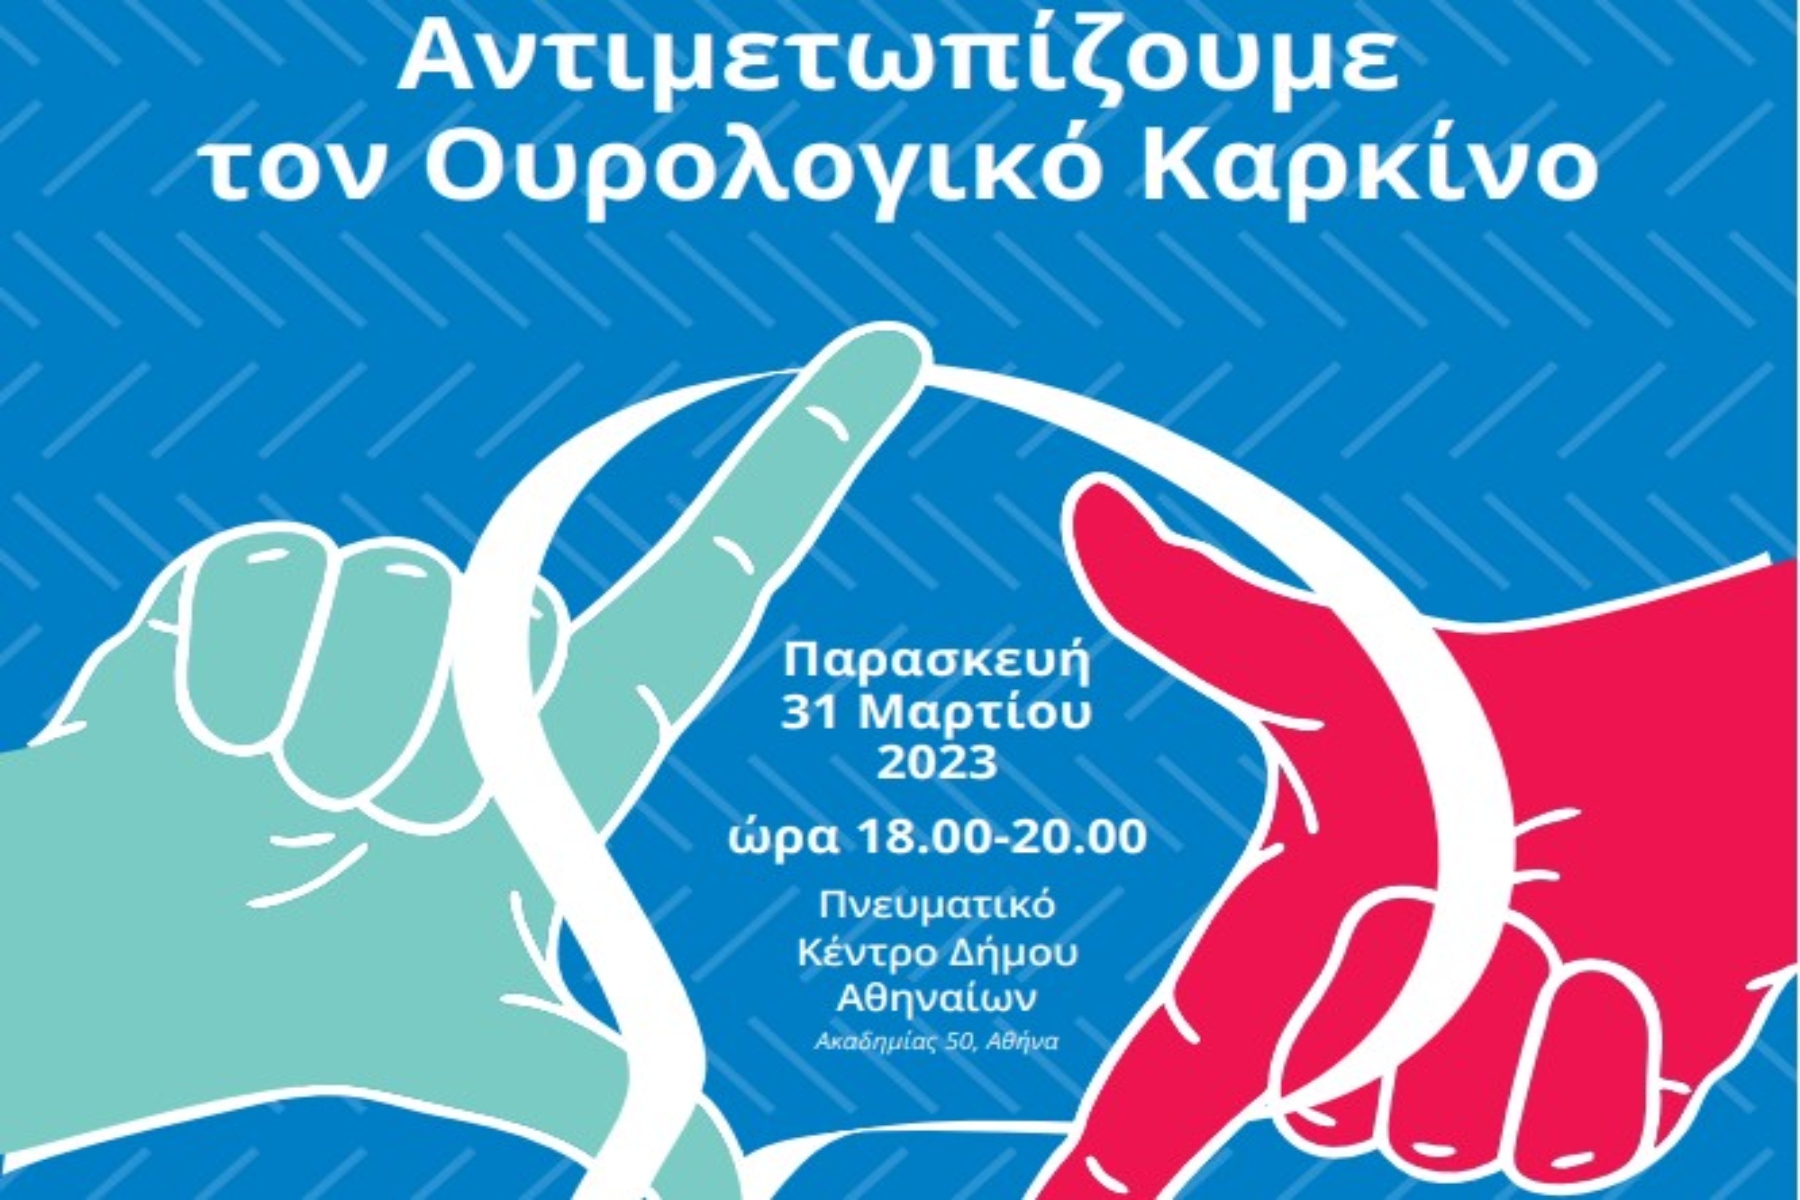 Ελληνική Ουρολογική Εταιρεία: Αντιμετωπίζουμε τον Ουρολογικό Καρκίνο